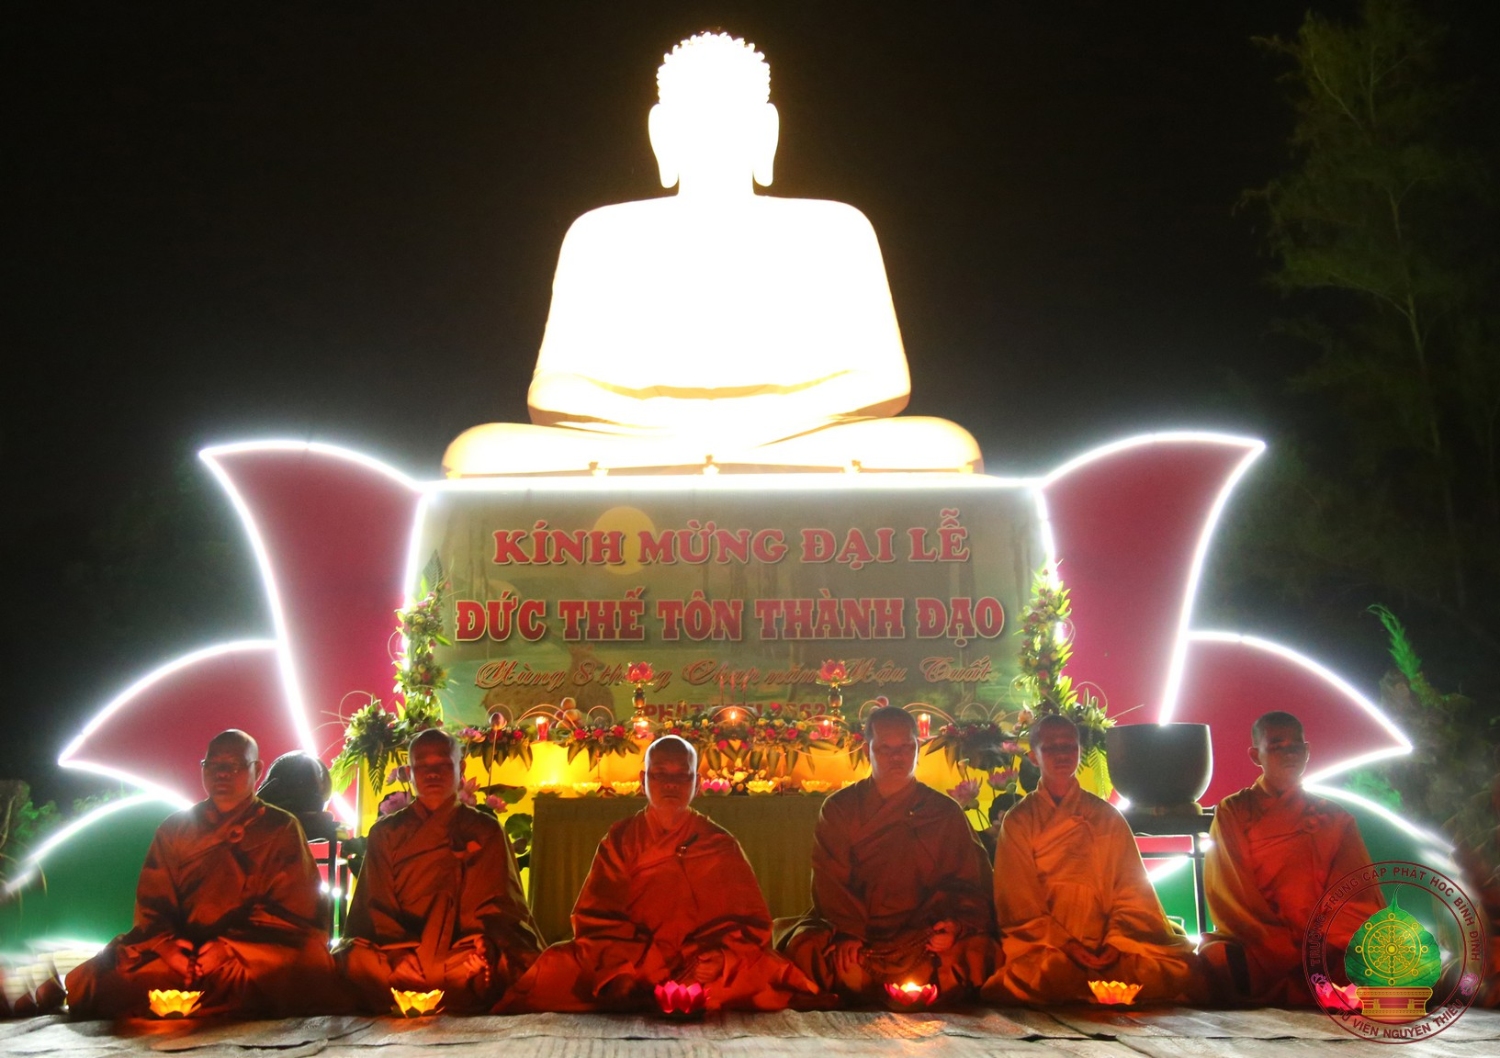 Hình ảnh về lễ hoa đăng Đức Phật thành Đạo tại Trường TCPH Bình Định